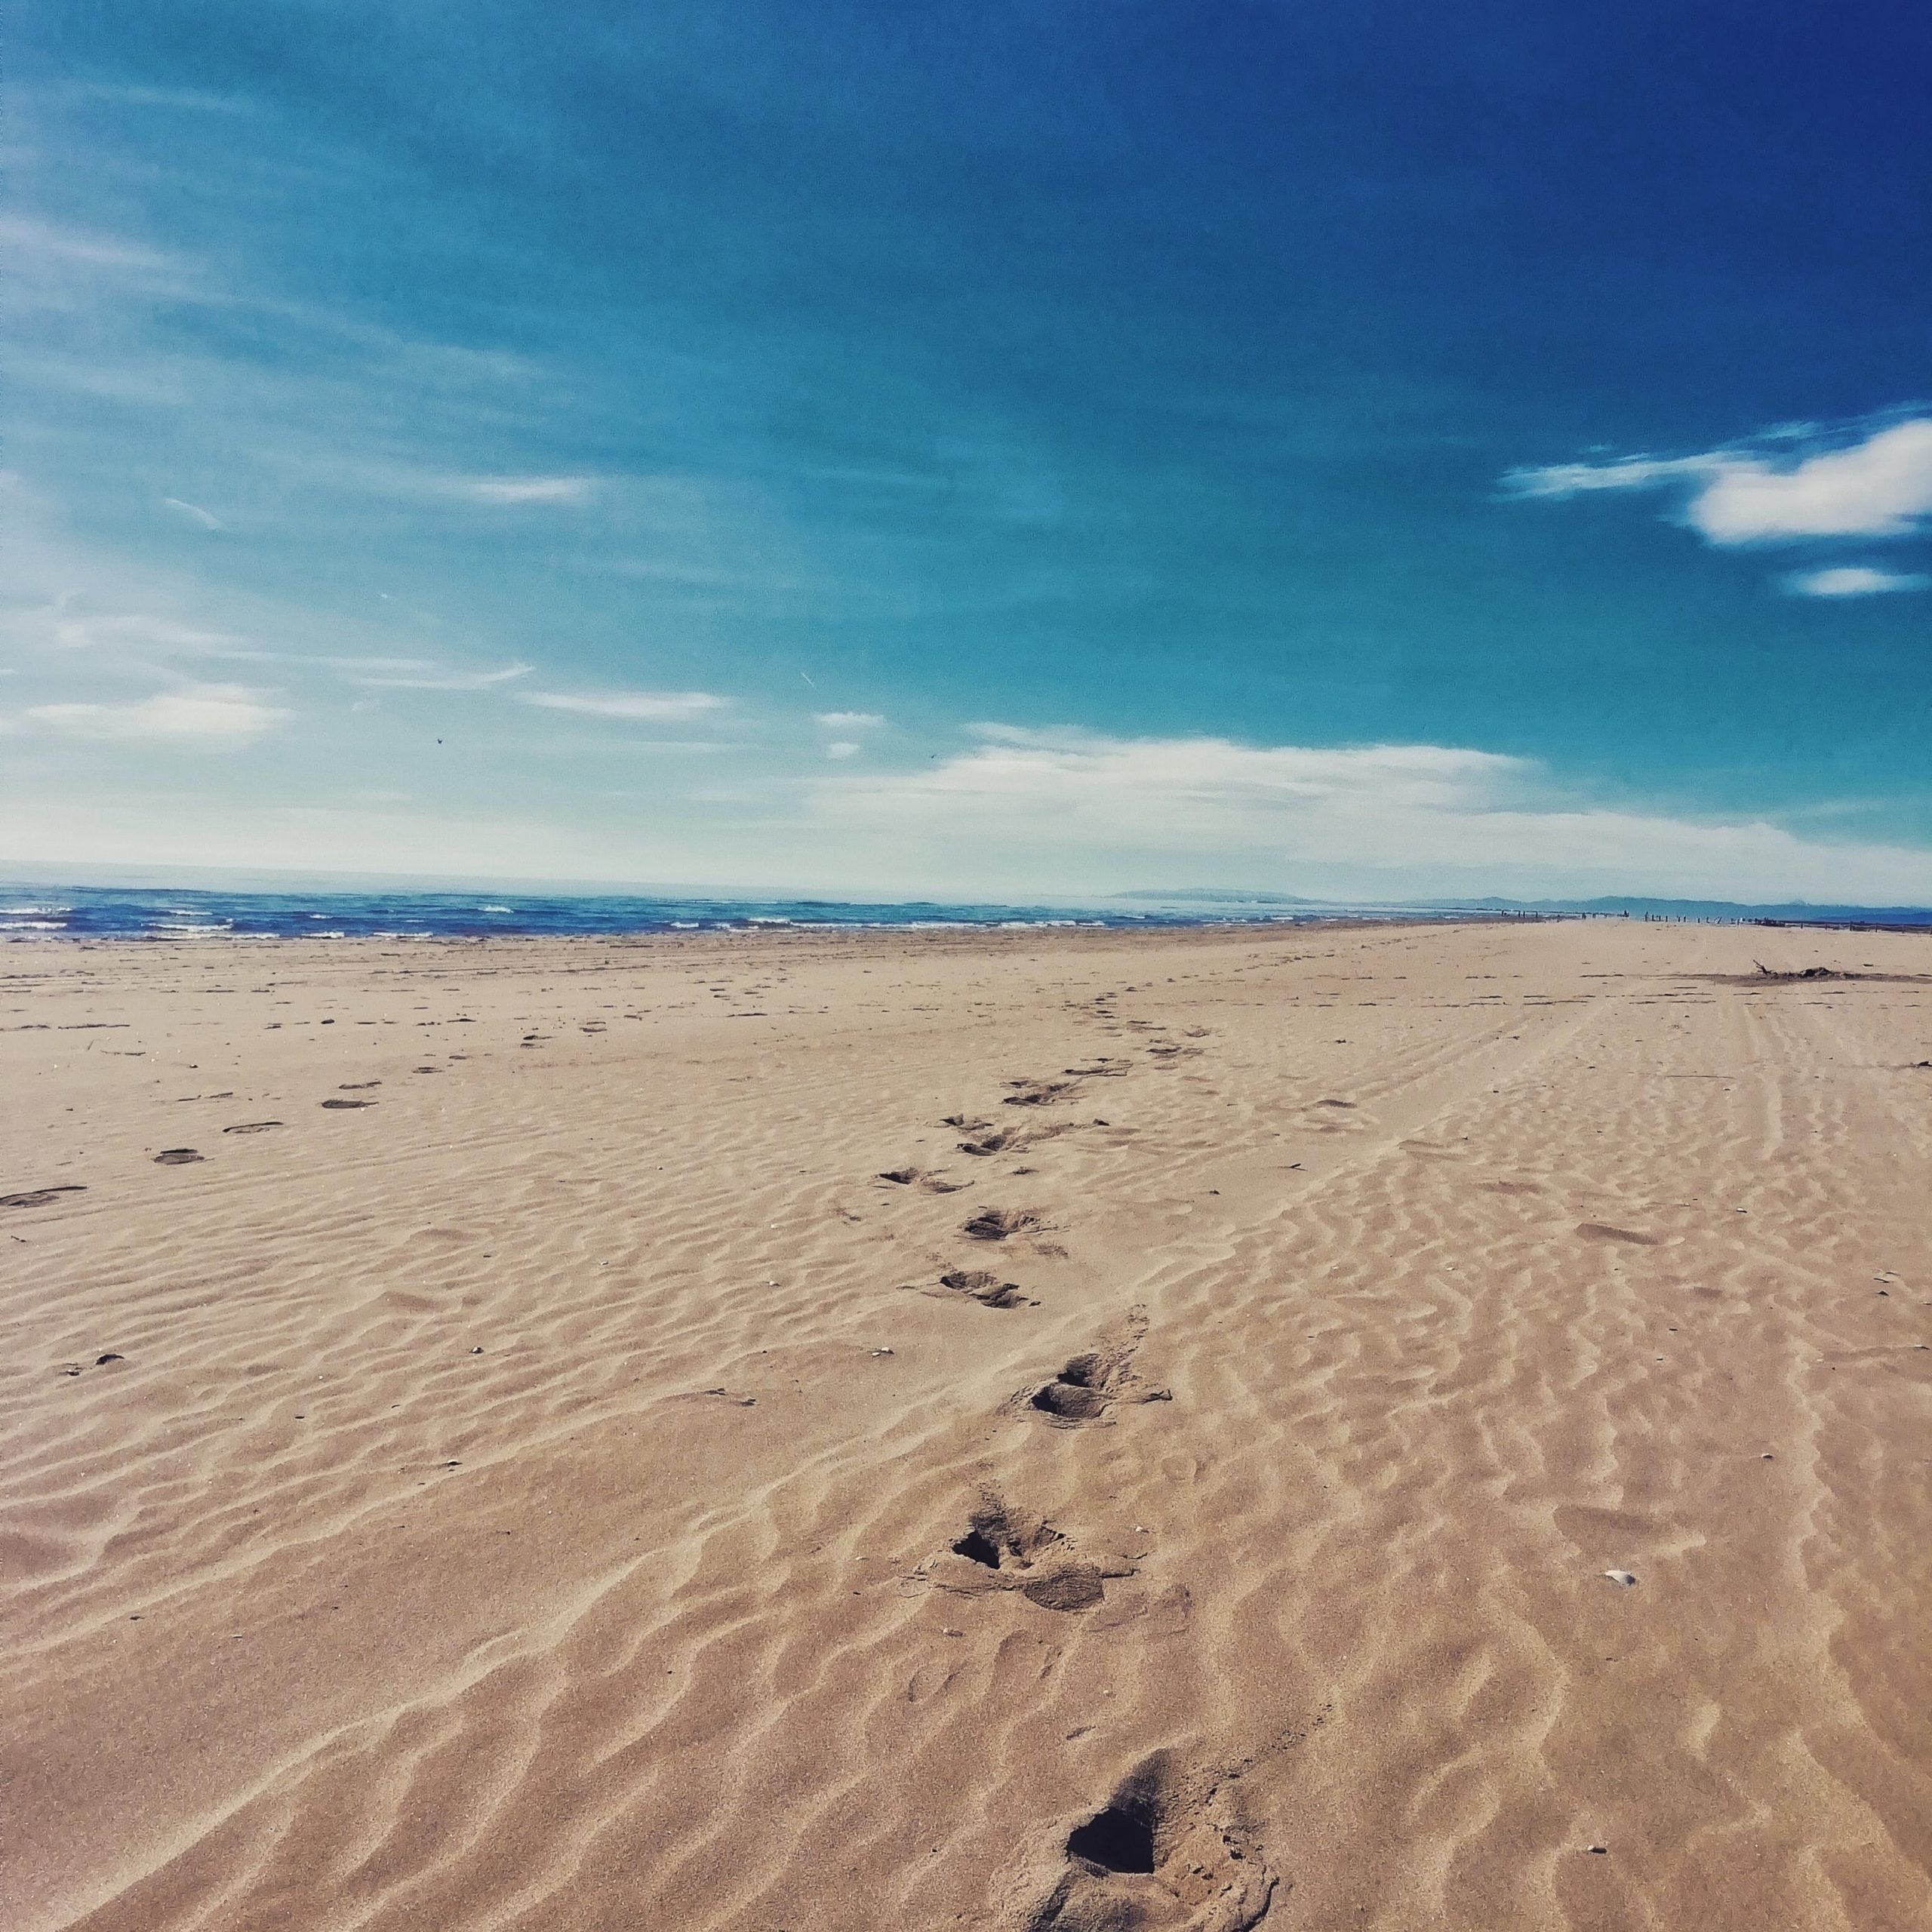 Playas vírgenes de arena fina y poca profundidad en los Eucaliptus. Casi 6 kilómetros de largo y 200 metros de ancho. La perfecta combinación entre arrozales y eucaliptos.